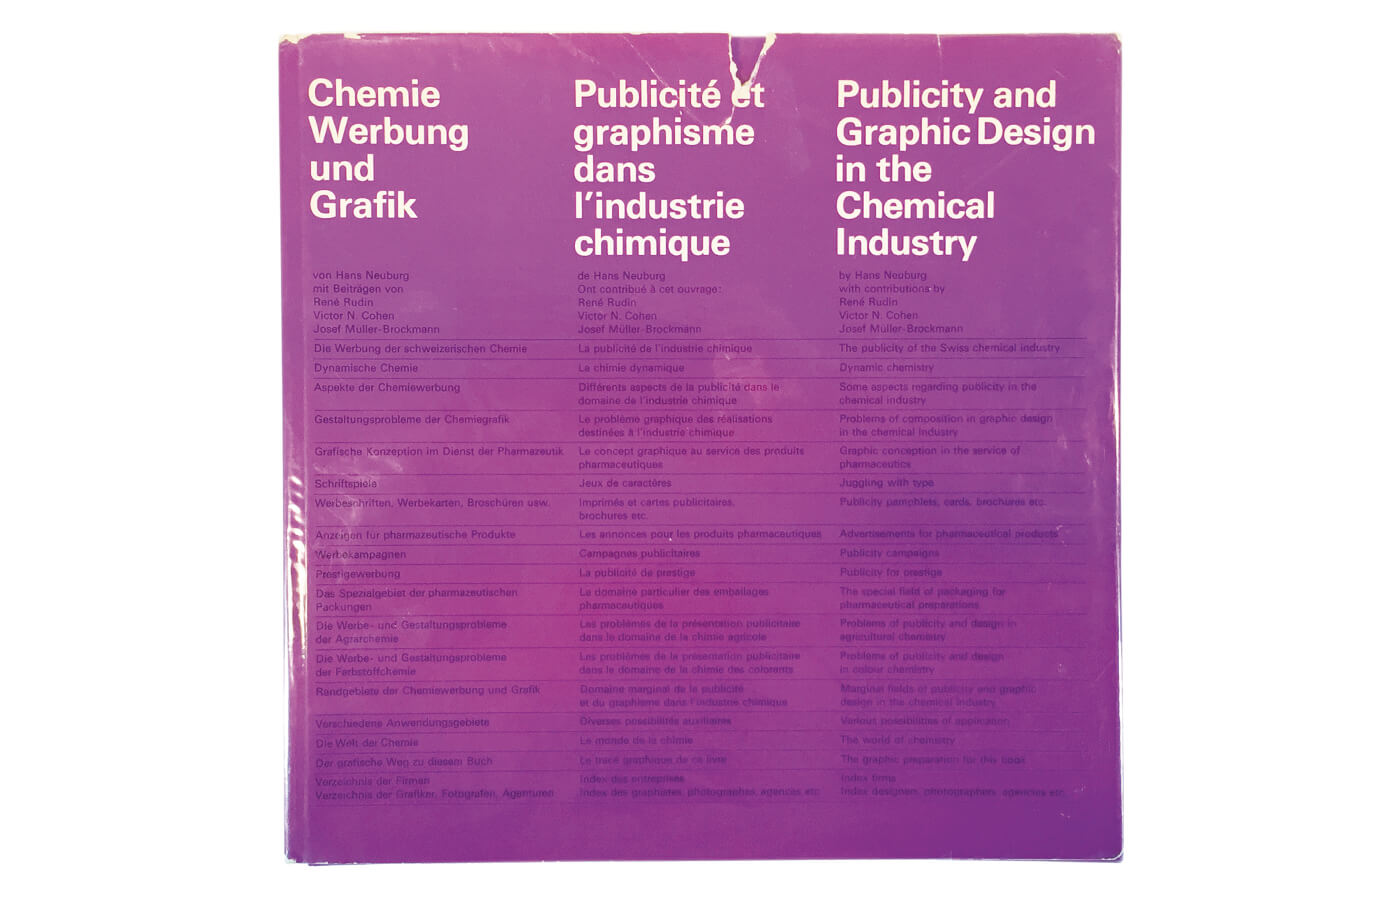 Chemie Werbung und Grafik | Publicité et graphisme dans l’industrie chimique | Publicity and Graphic Design in the Chemical Industry